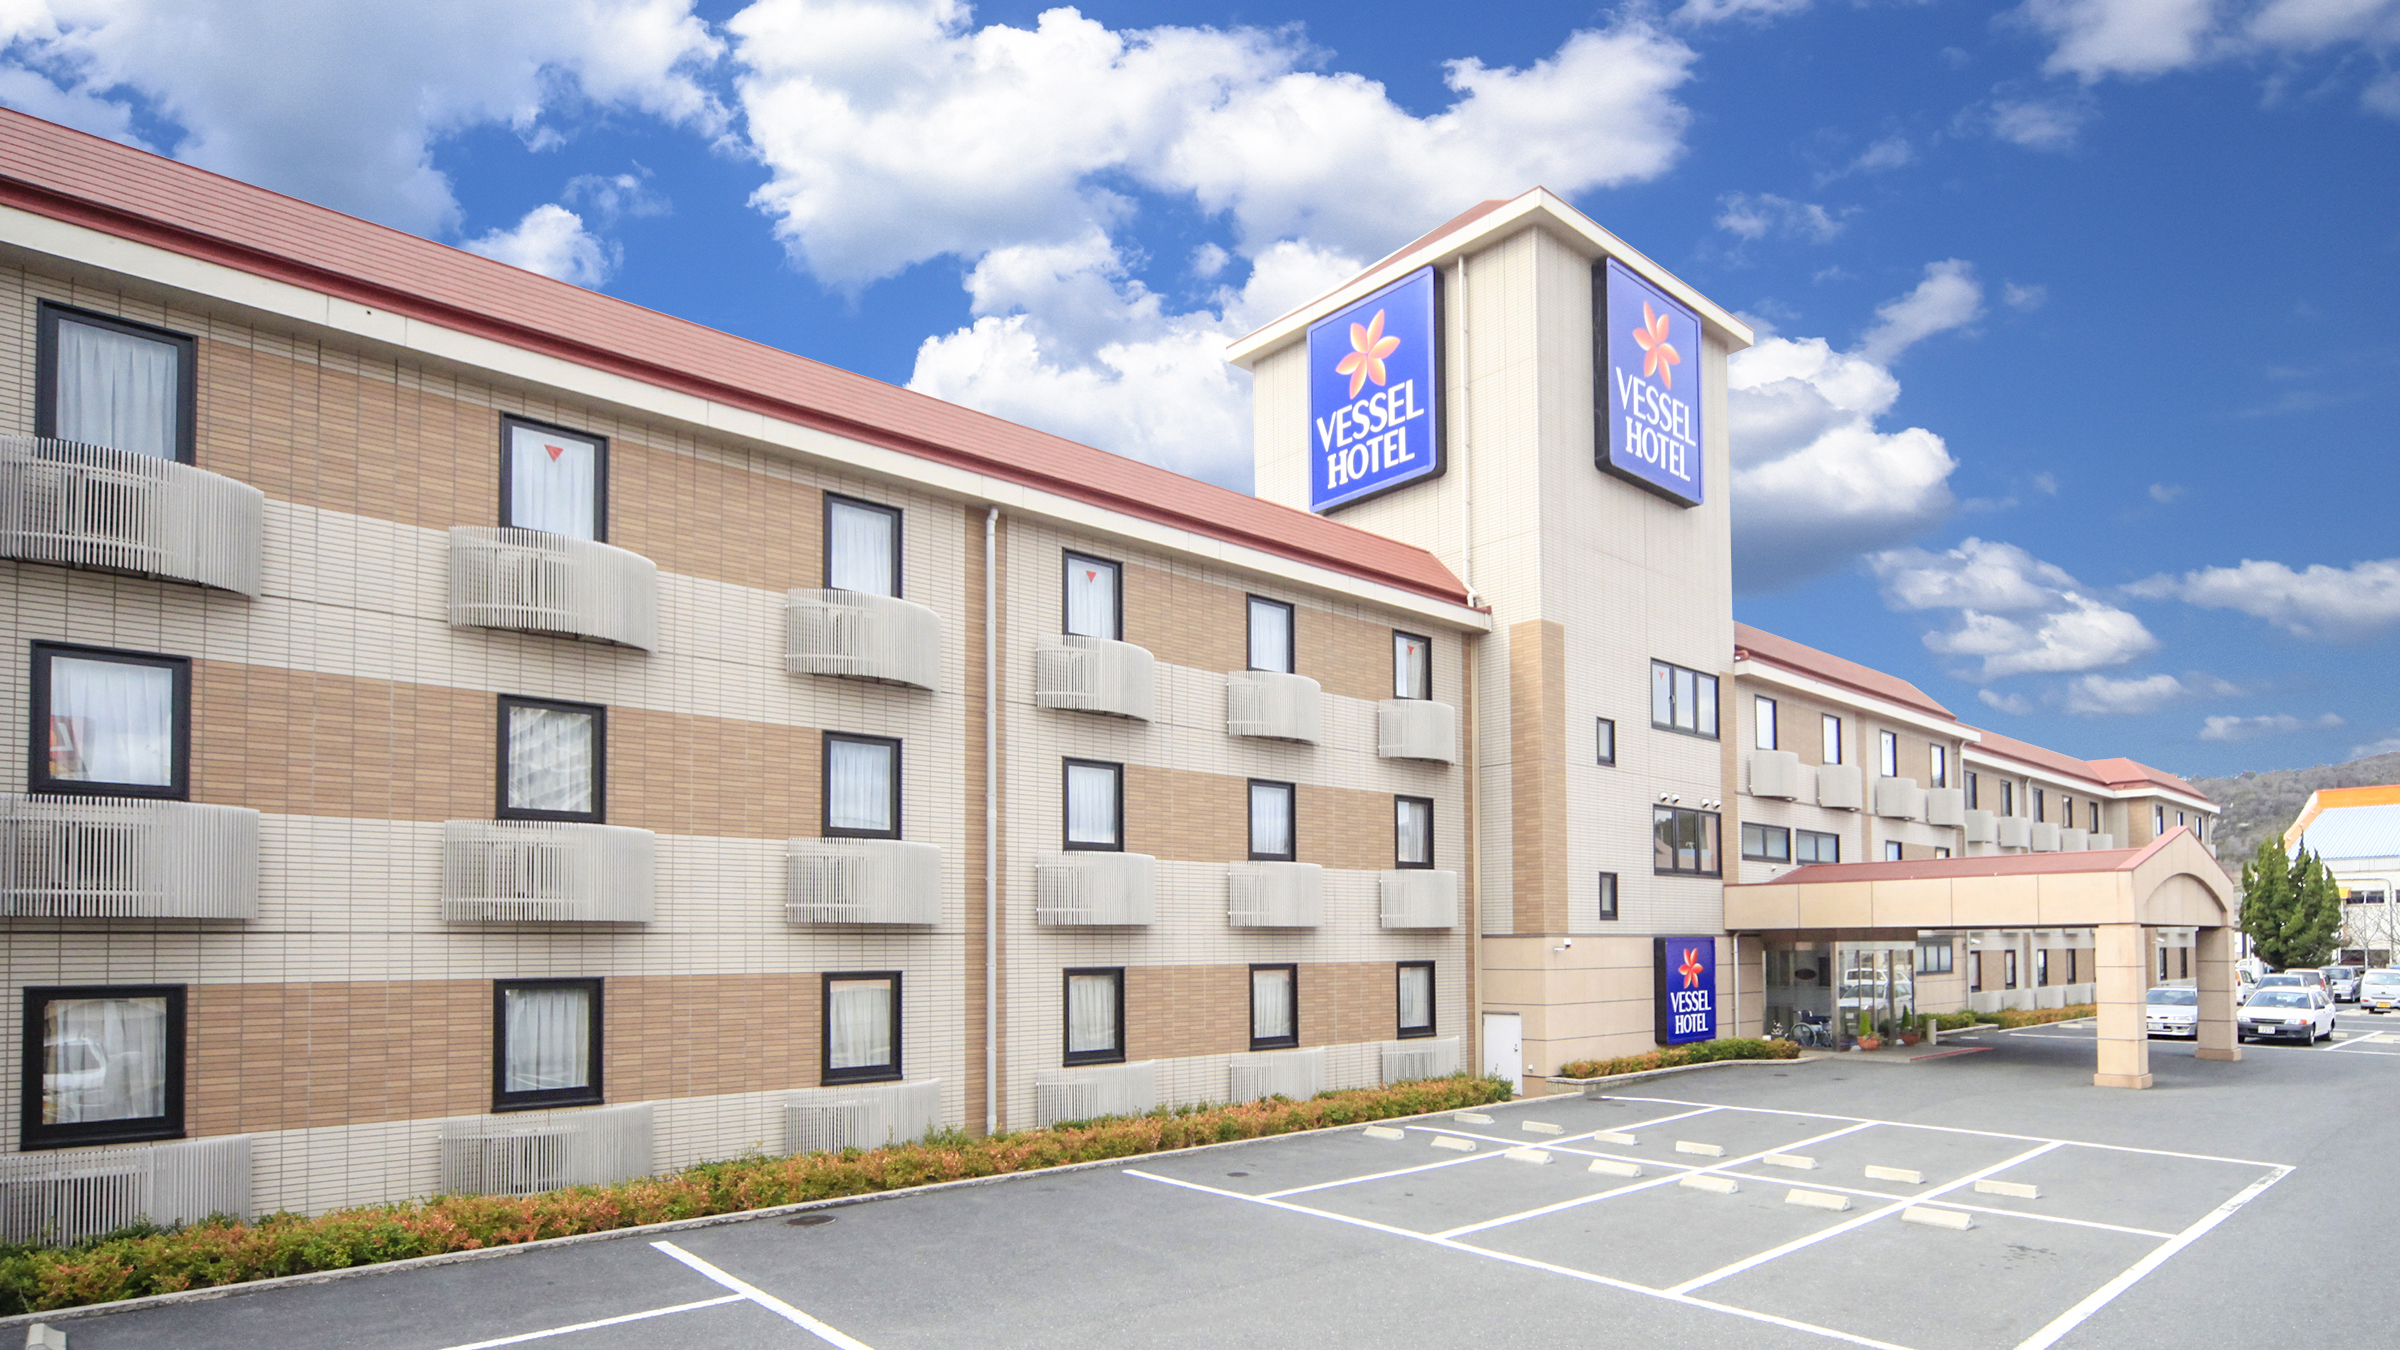 岡山の鷲羽山ハイランドへ遊びに行きます。ファミリー向けのホテルを探しています。